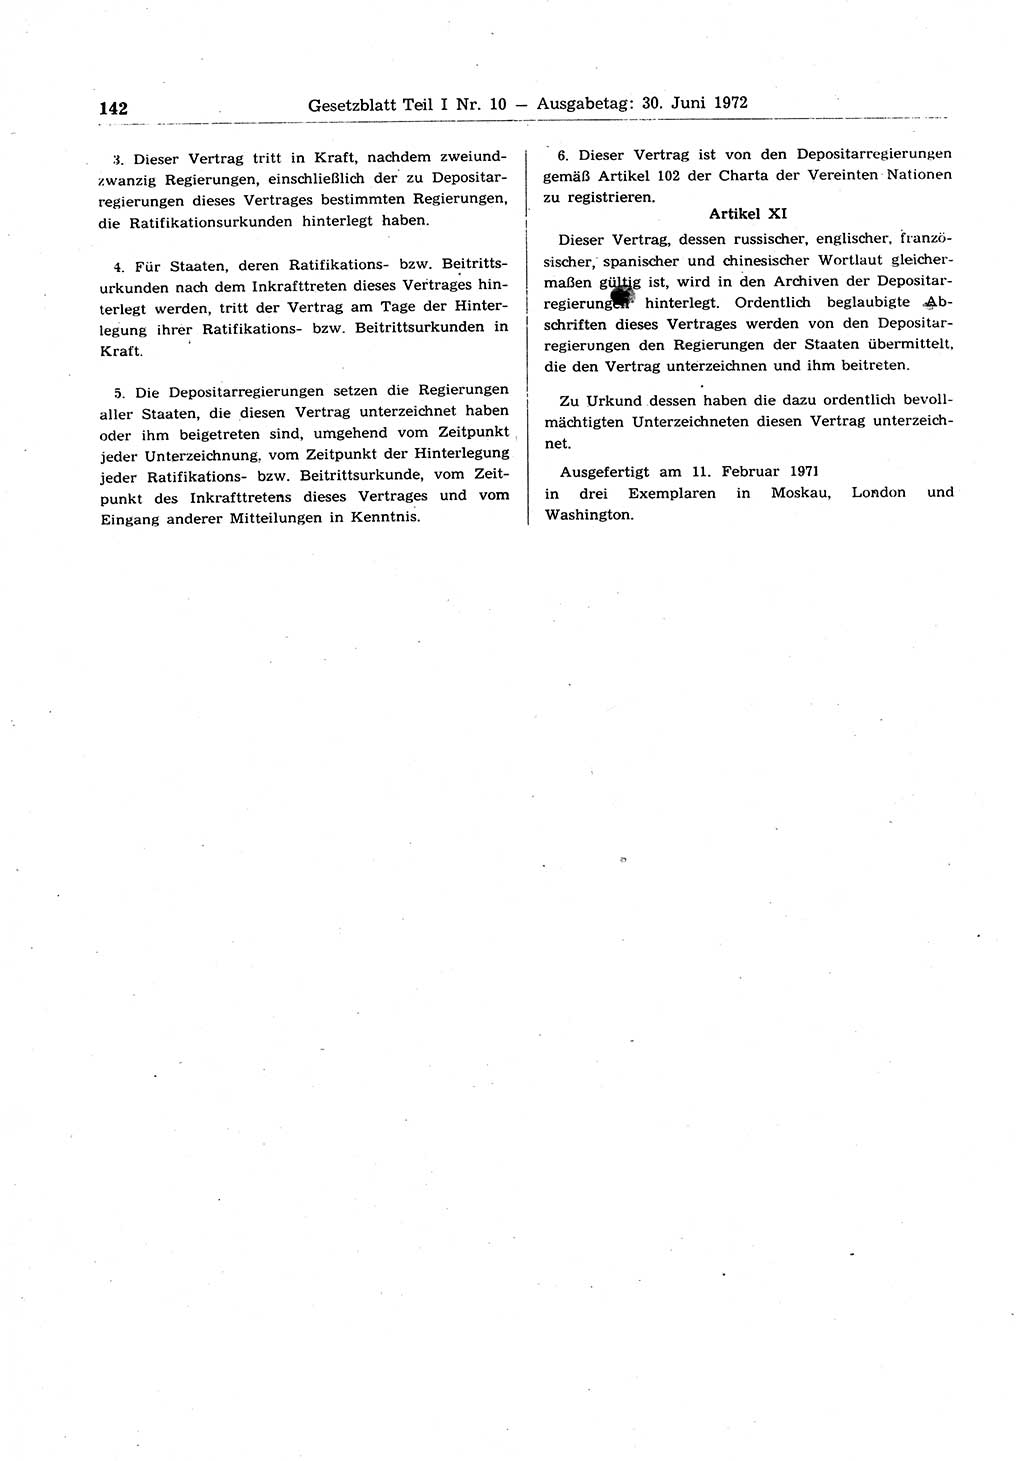 Gesetzblatt (GBl.) der Deutschen Demokratischen Republik (DDR) Teil Ⅰ 1972, Seite 142 (GBl. DDR Ⅰ 1972, S. 142)